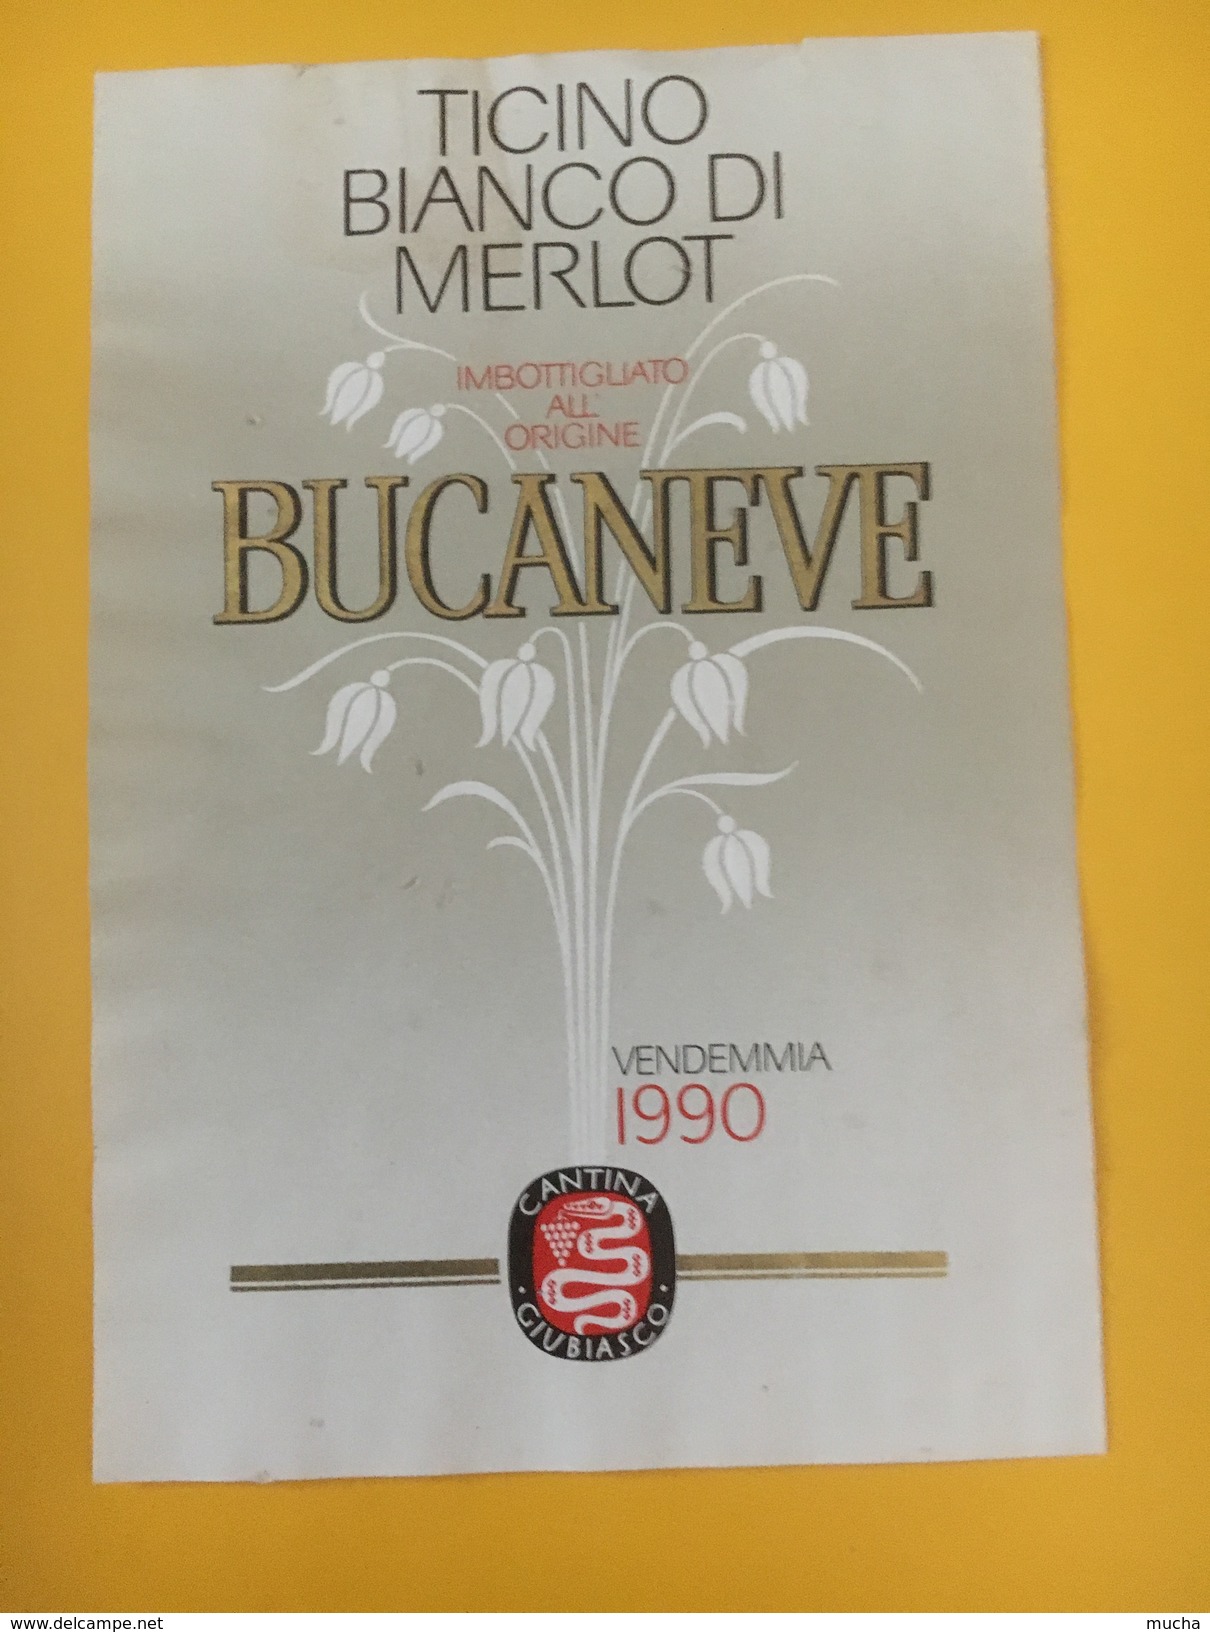 5541 - Bucaneve 1990 Bianco Di Merlot Ticino Suisse - Fiori